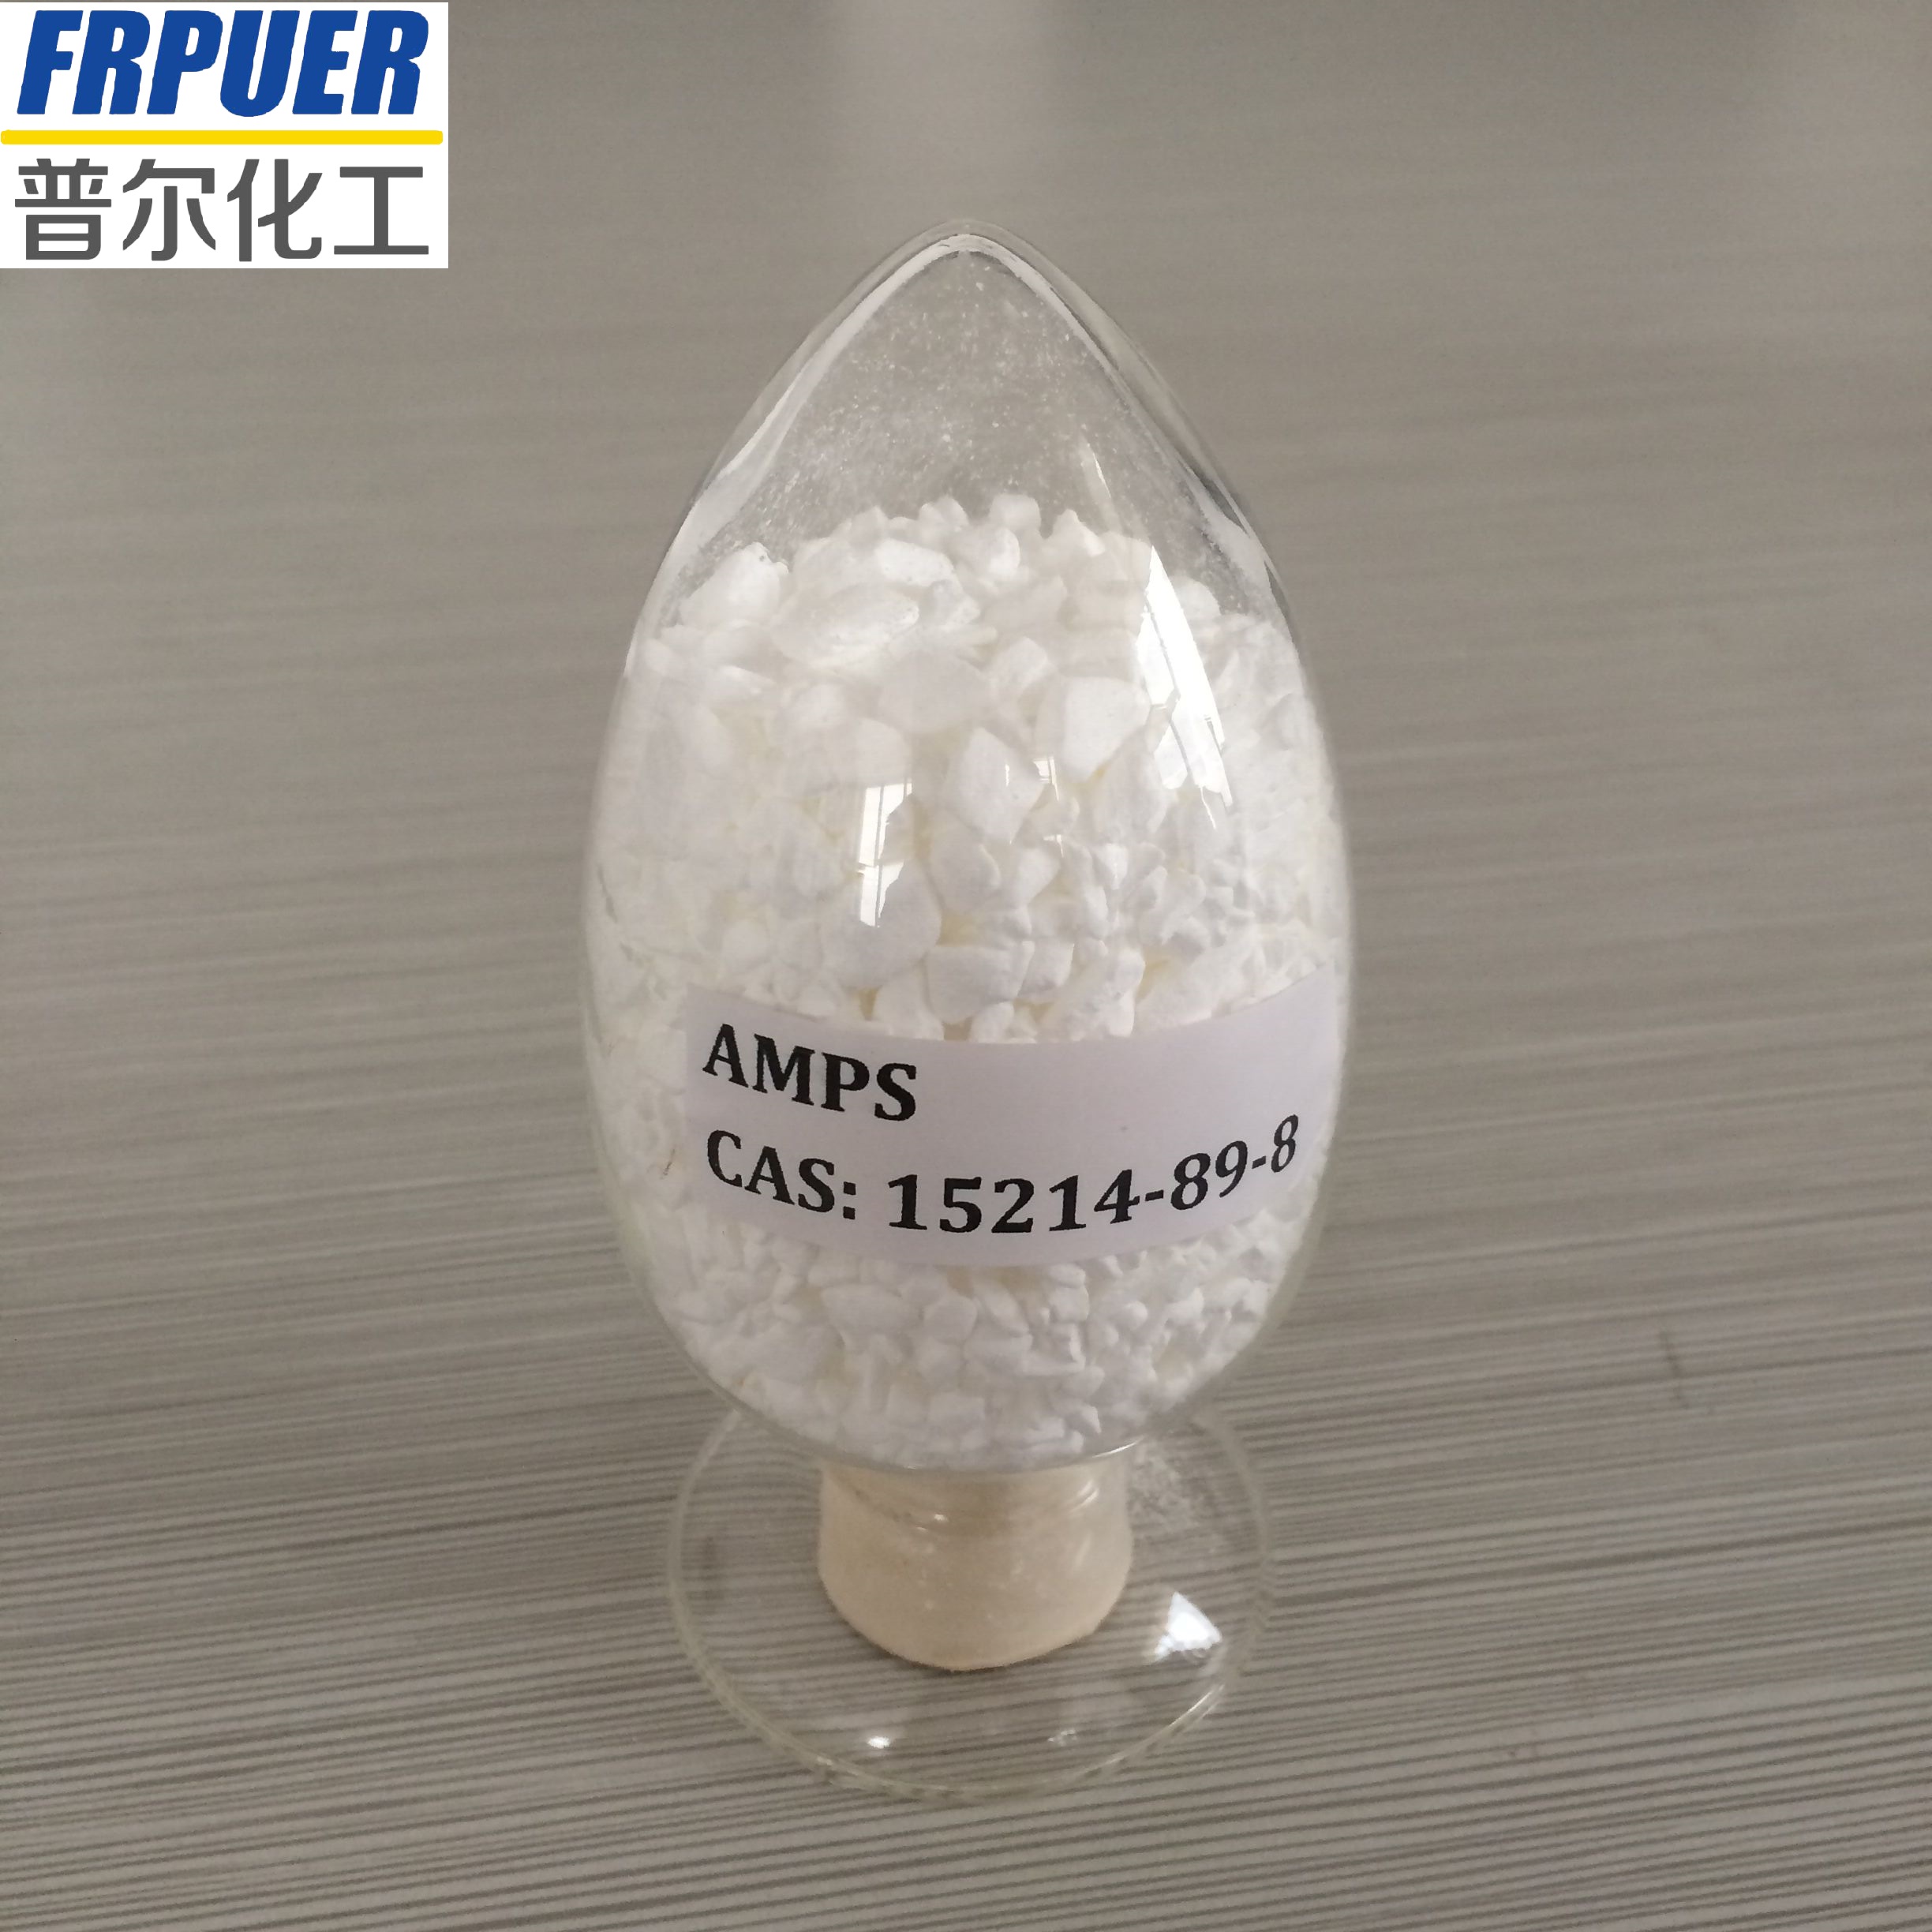  AMPS monomer granule purity 99% 2- acrylamido-2- methylpropanesulfonic acid (AMPS) 99%